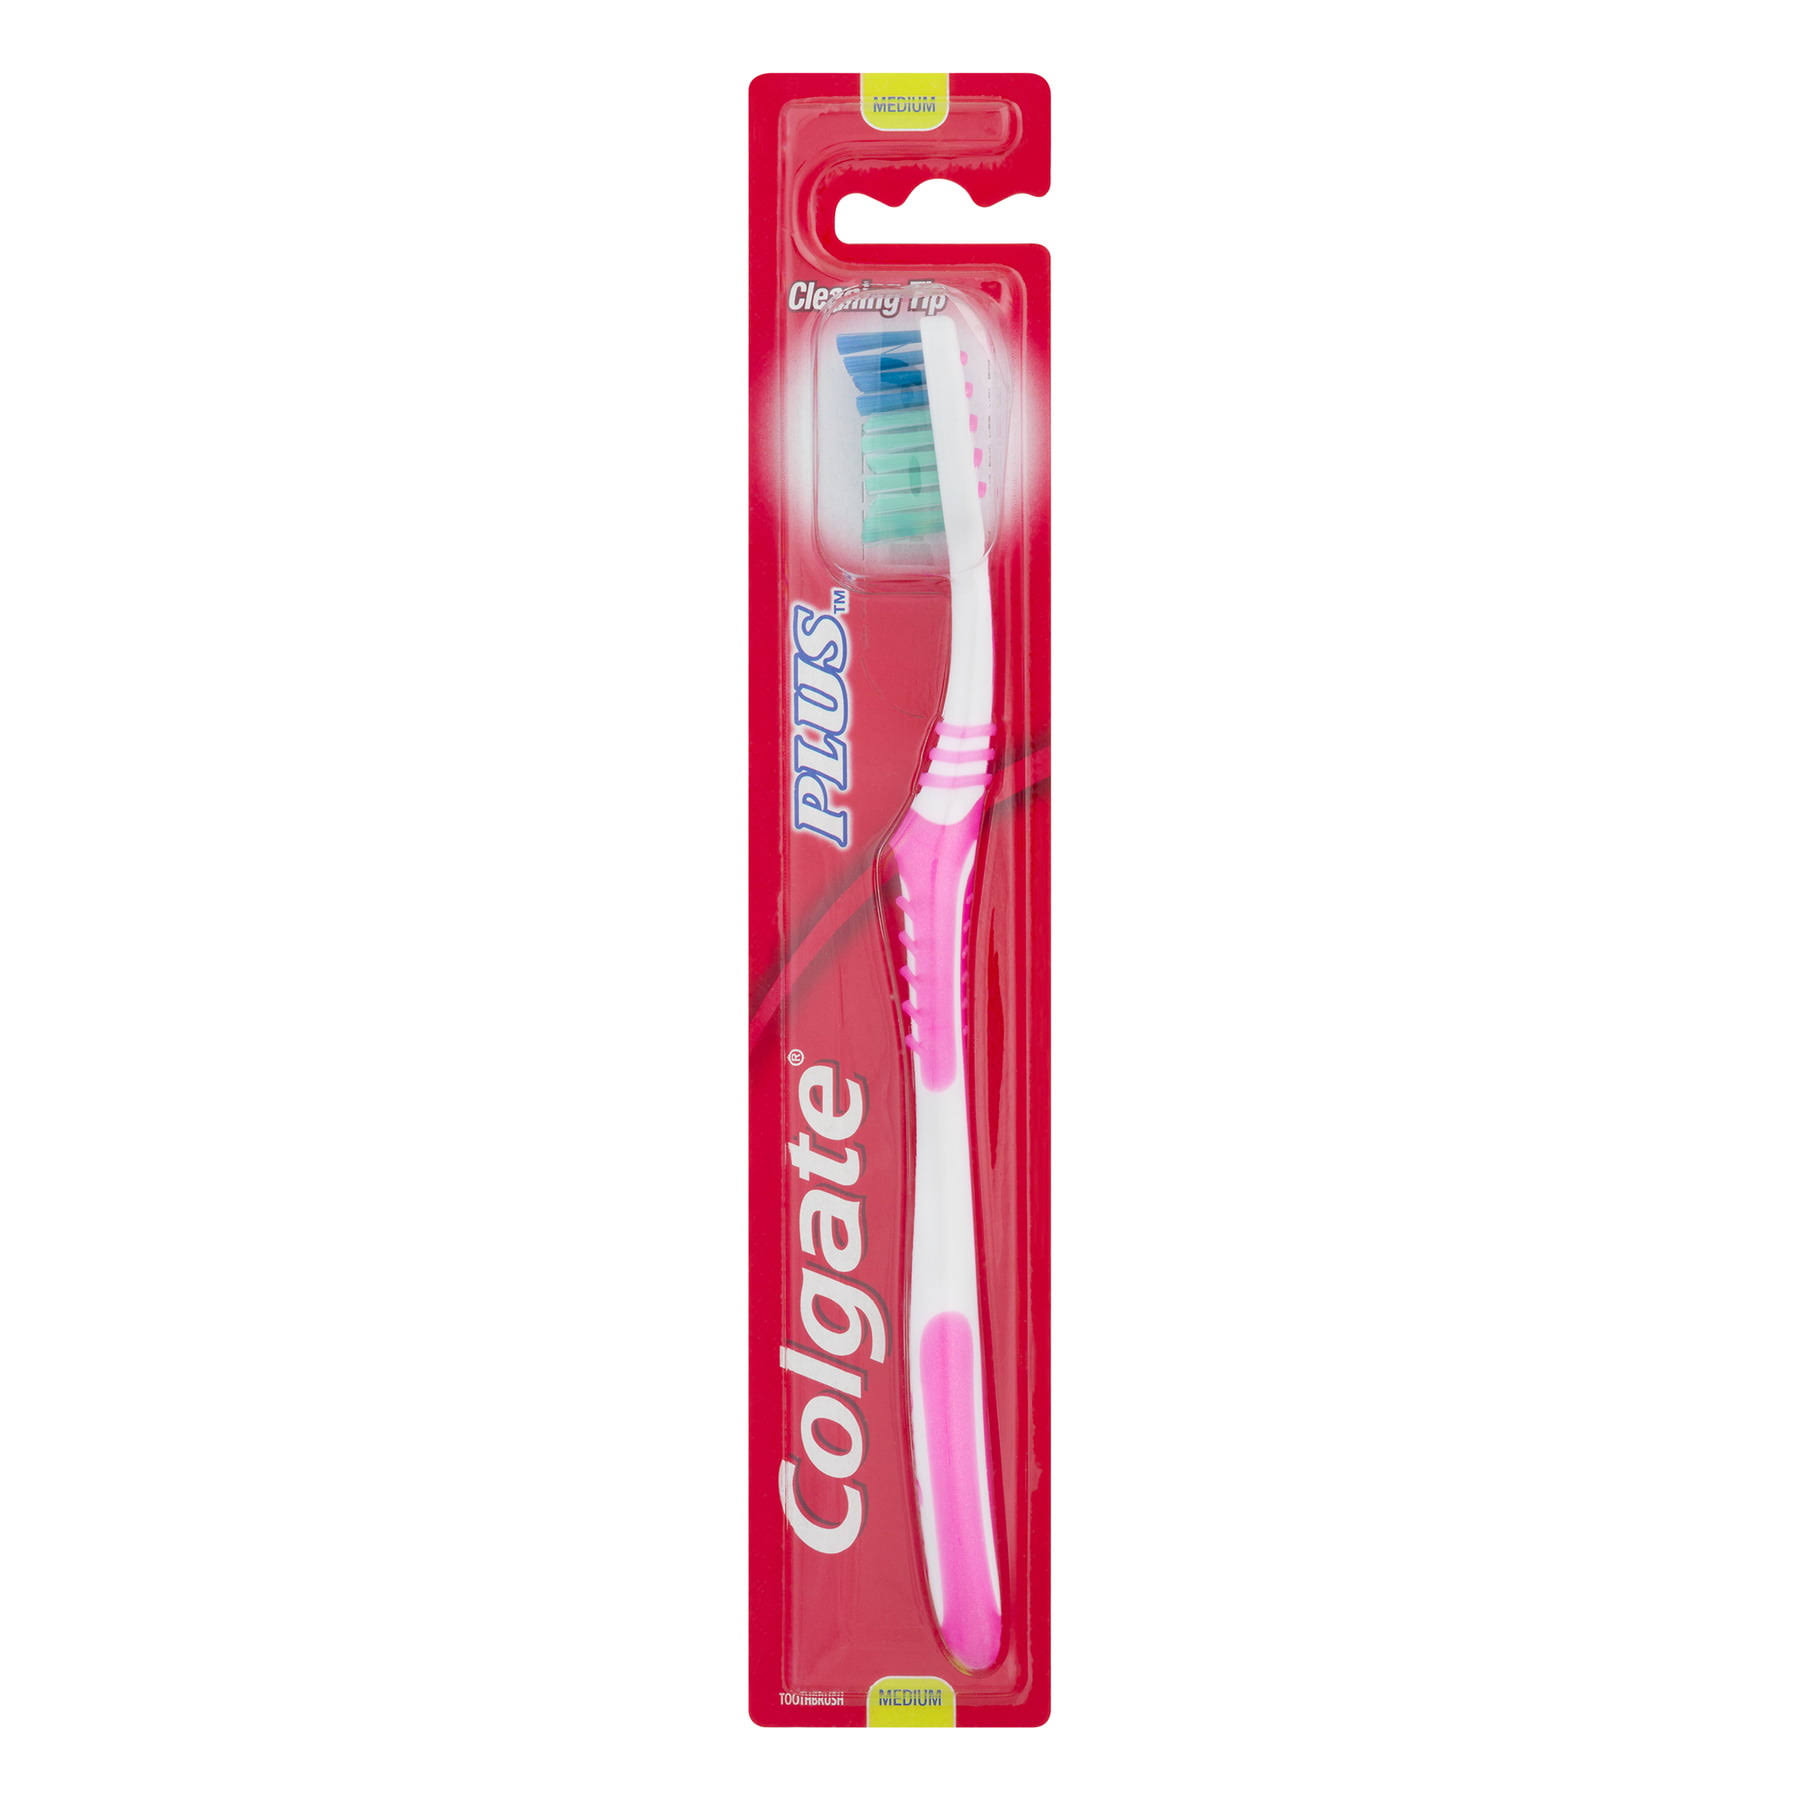 Colgate Plus Toothbrush Medium, 1 Each